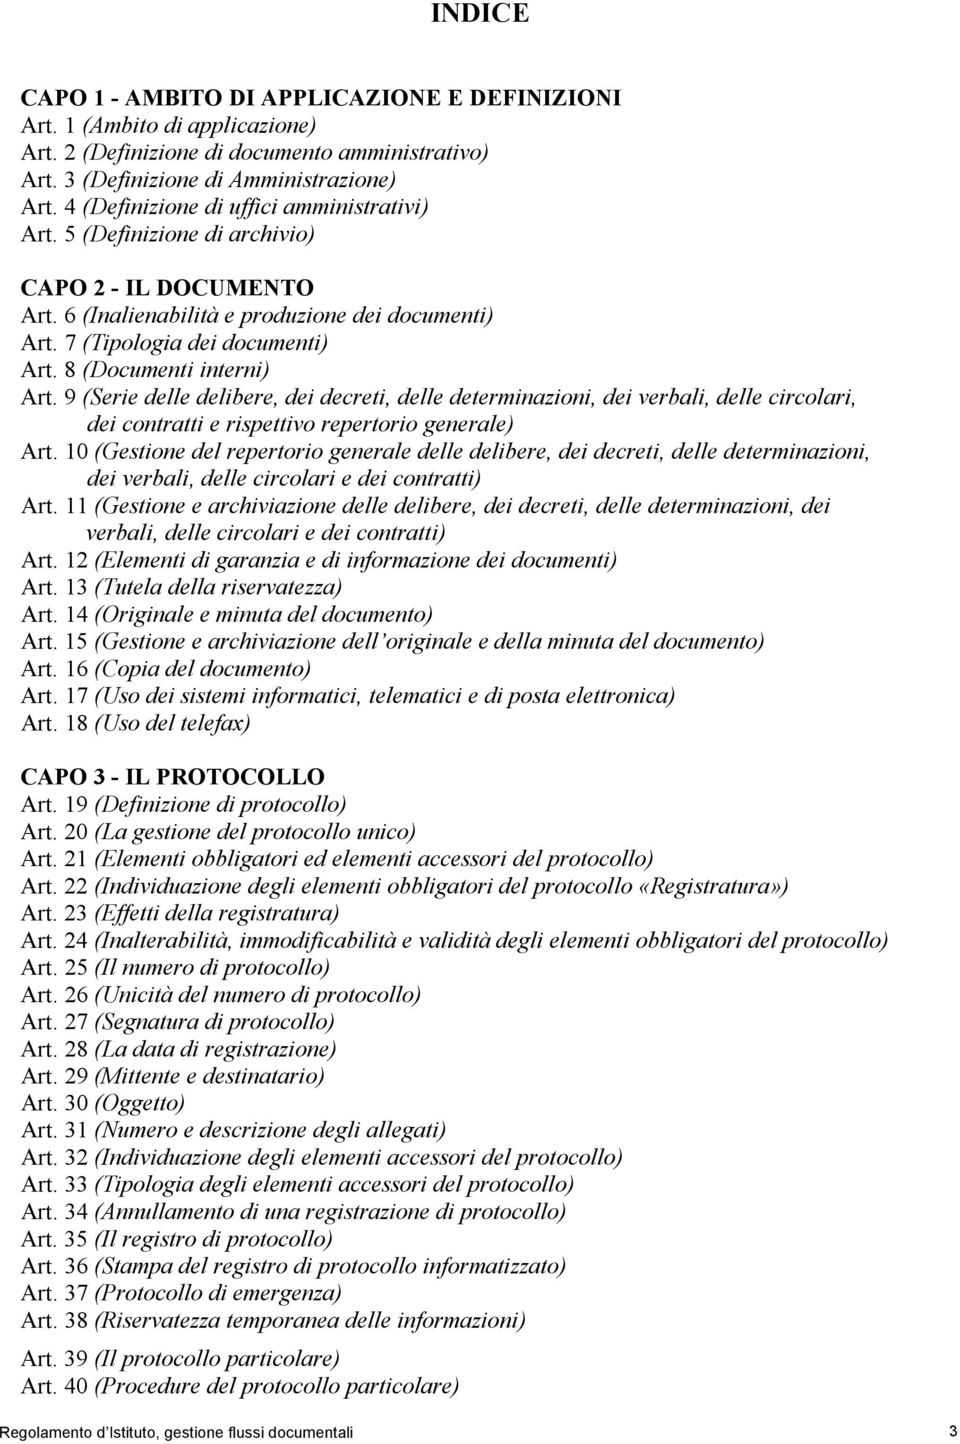 8 (Documenti interni) Art. 9 (Serie delle delibere, dei decreti, delle determinazioni, dei verbali, delle circolari, dei contratti e rispettivo repertorio generale) Art.